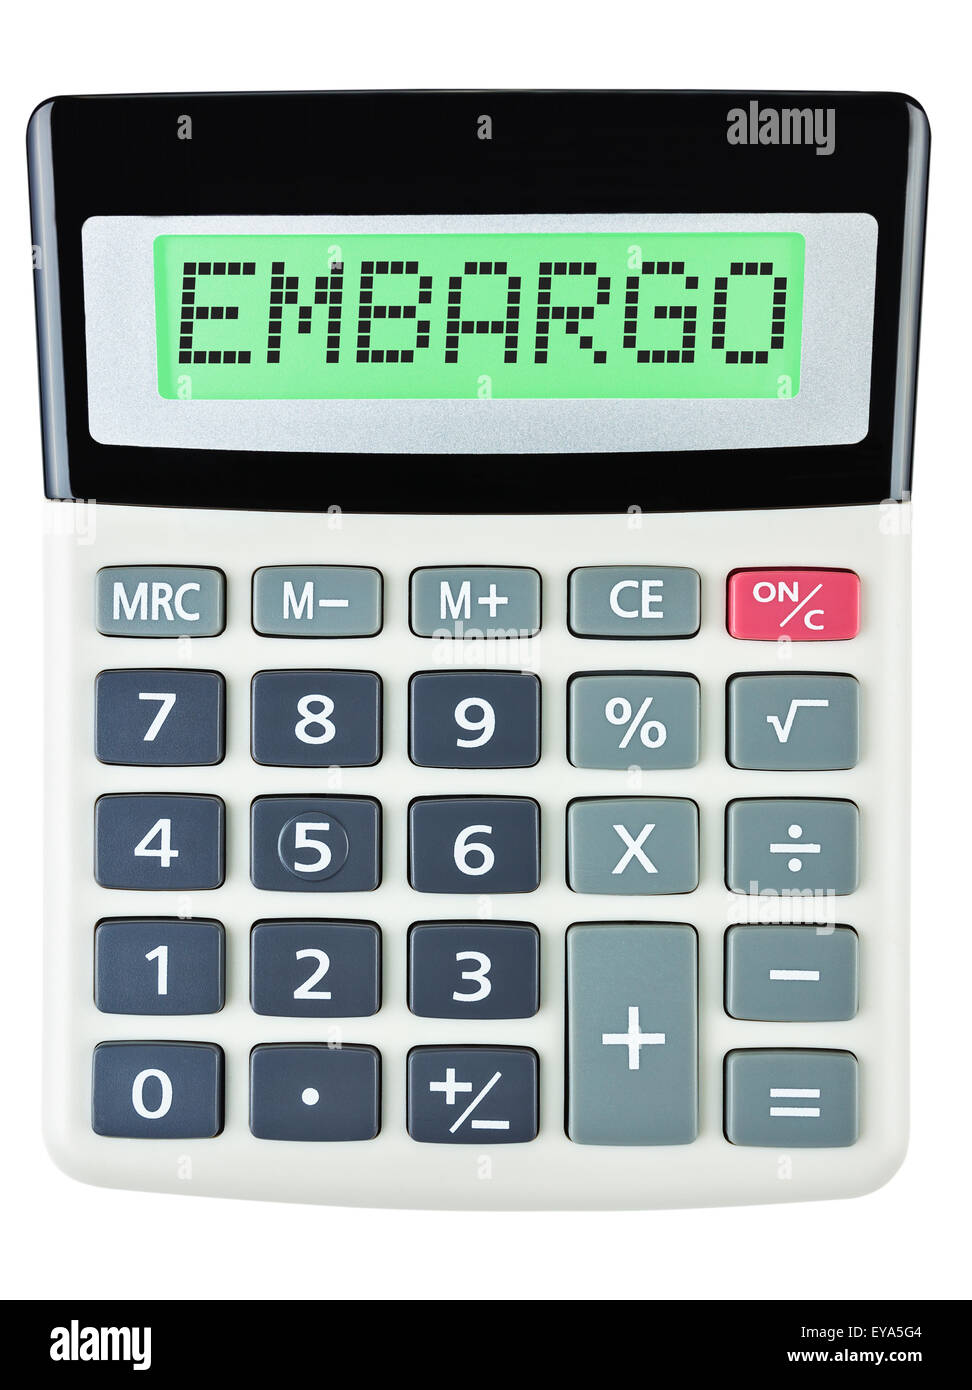 Calculatrice avec affichage sur l'embargo isolé sur fond blanc Banque D'Images